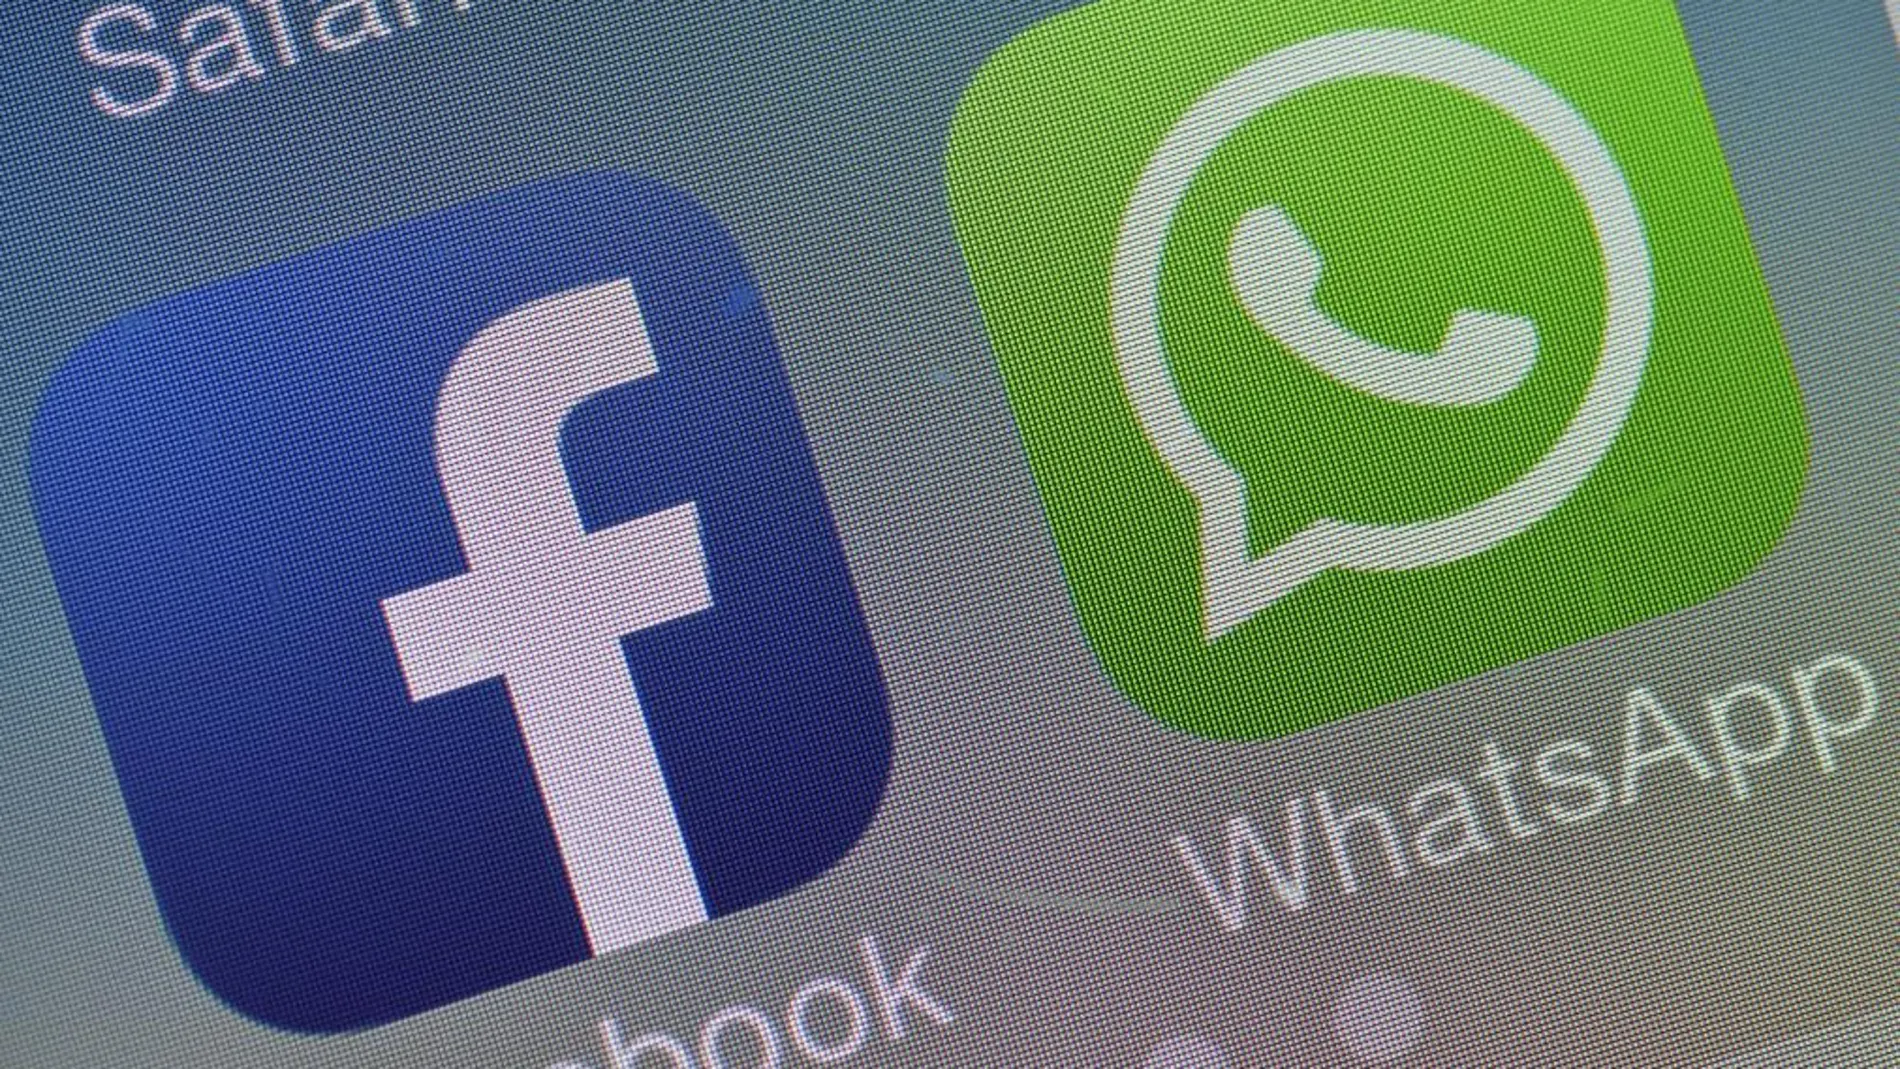 Facebook apuesta por WhatsApp para mantenerse joven y saltar al móvil